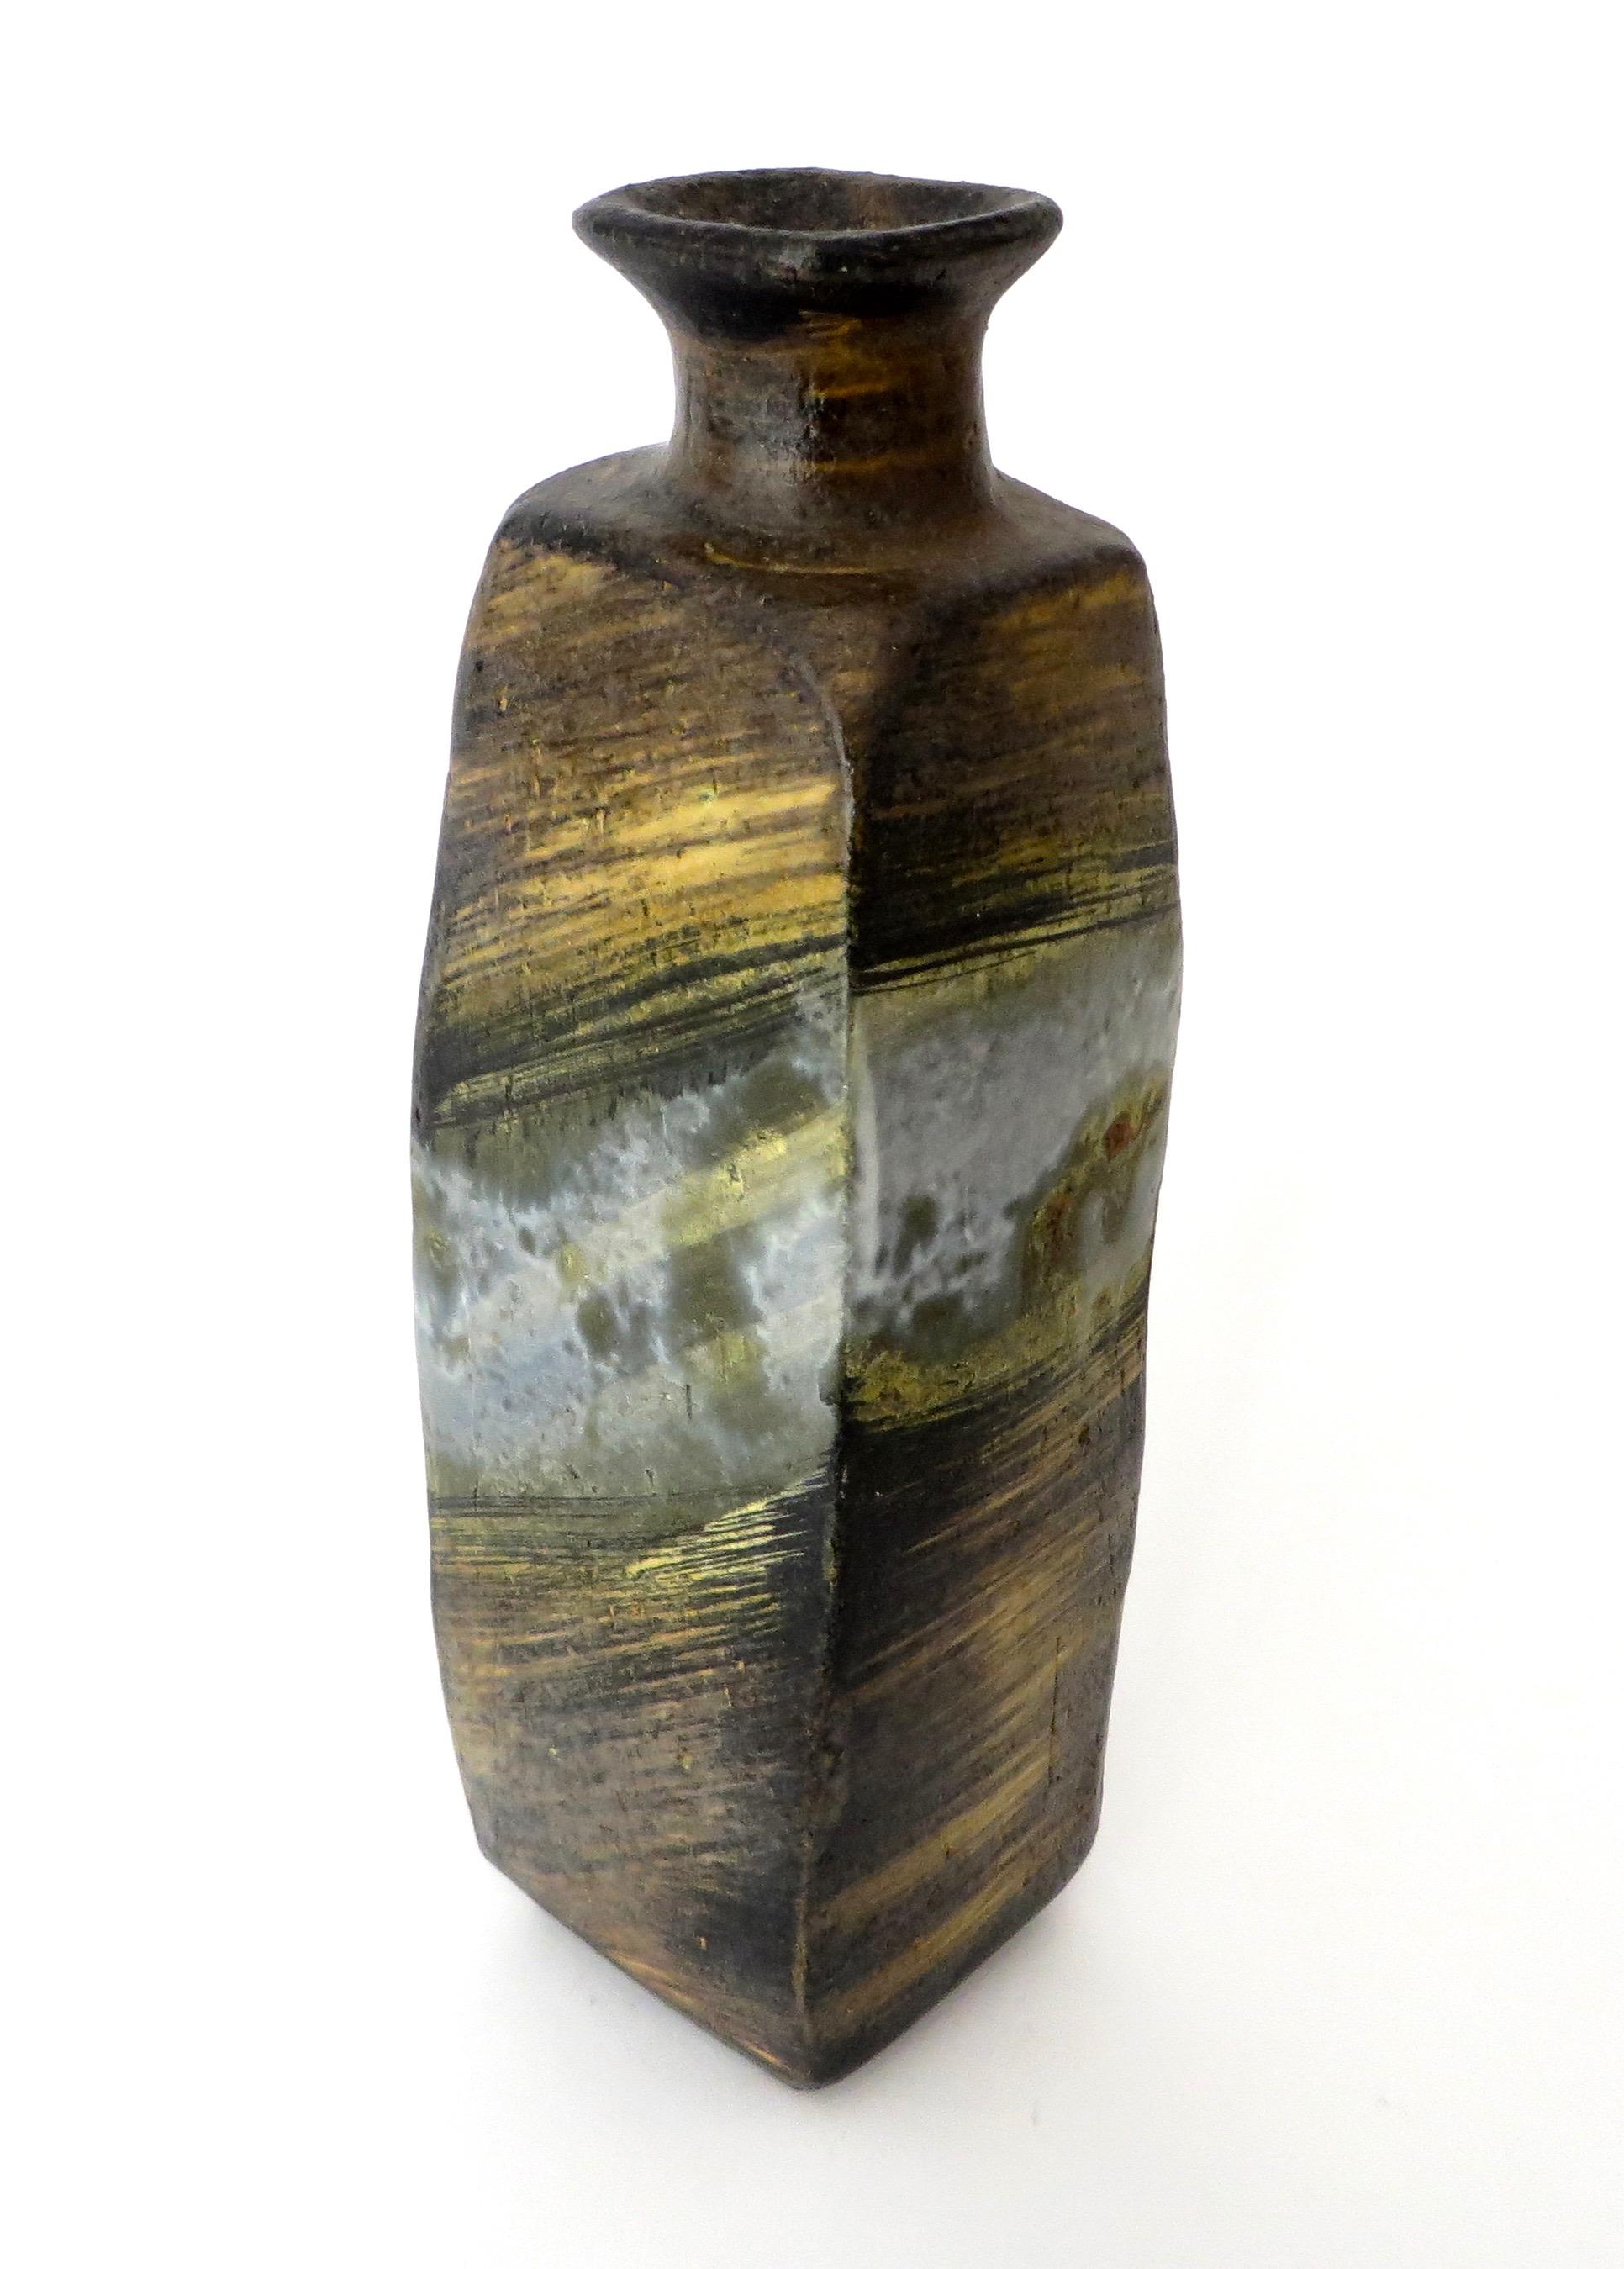 Italian Ceramic Vase or Bottle by Marcello Fantoni for Raymor 1